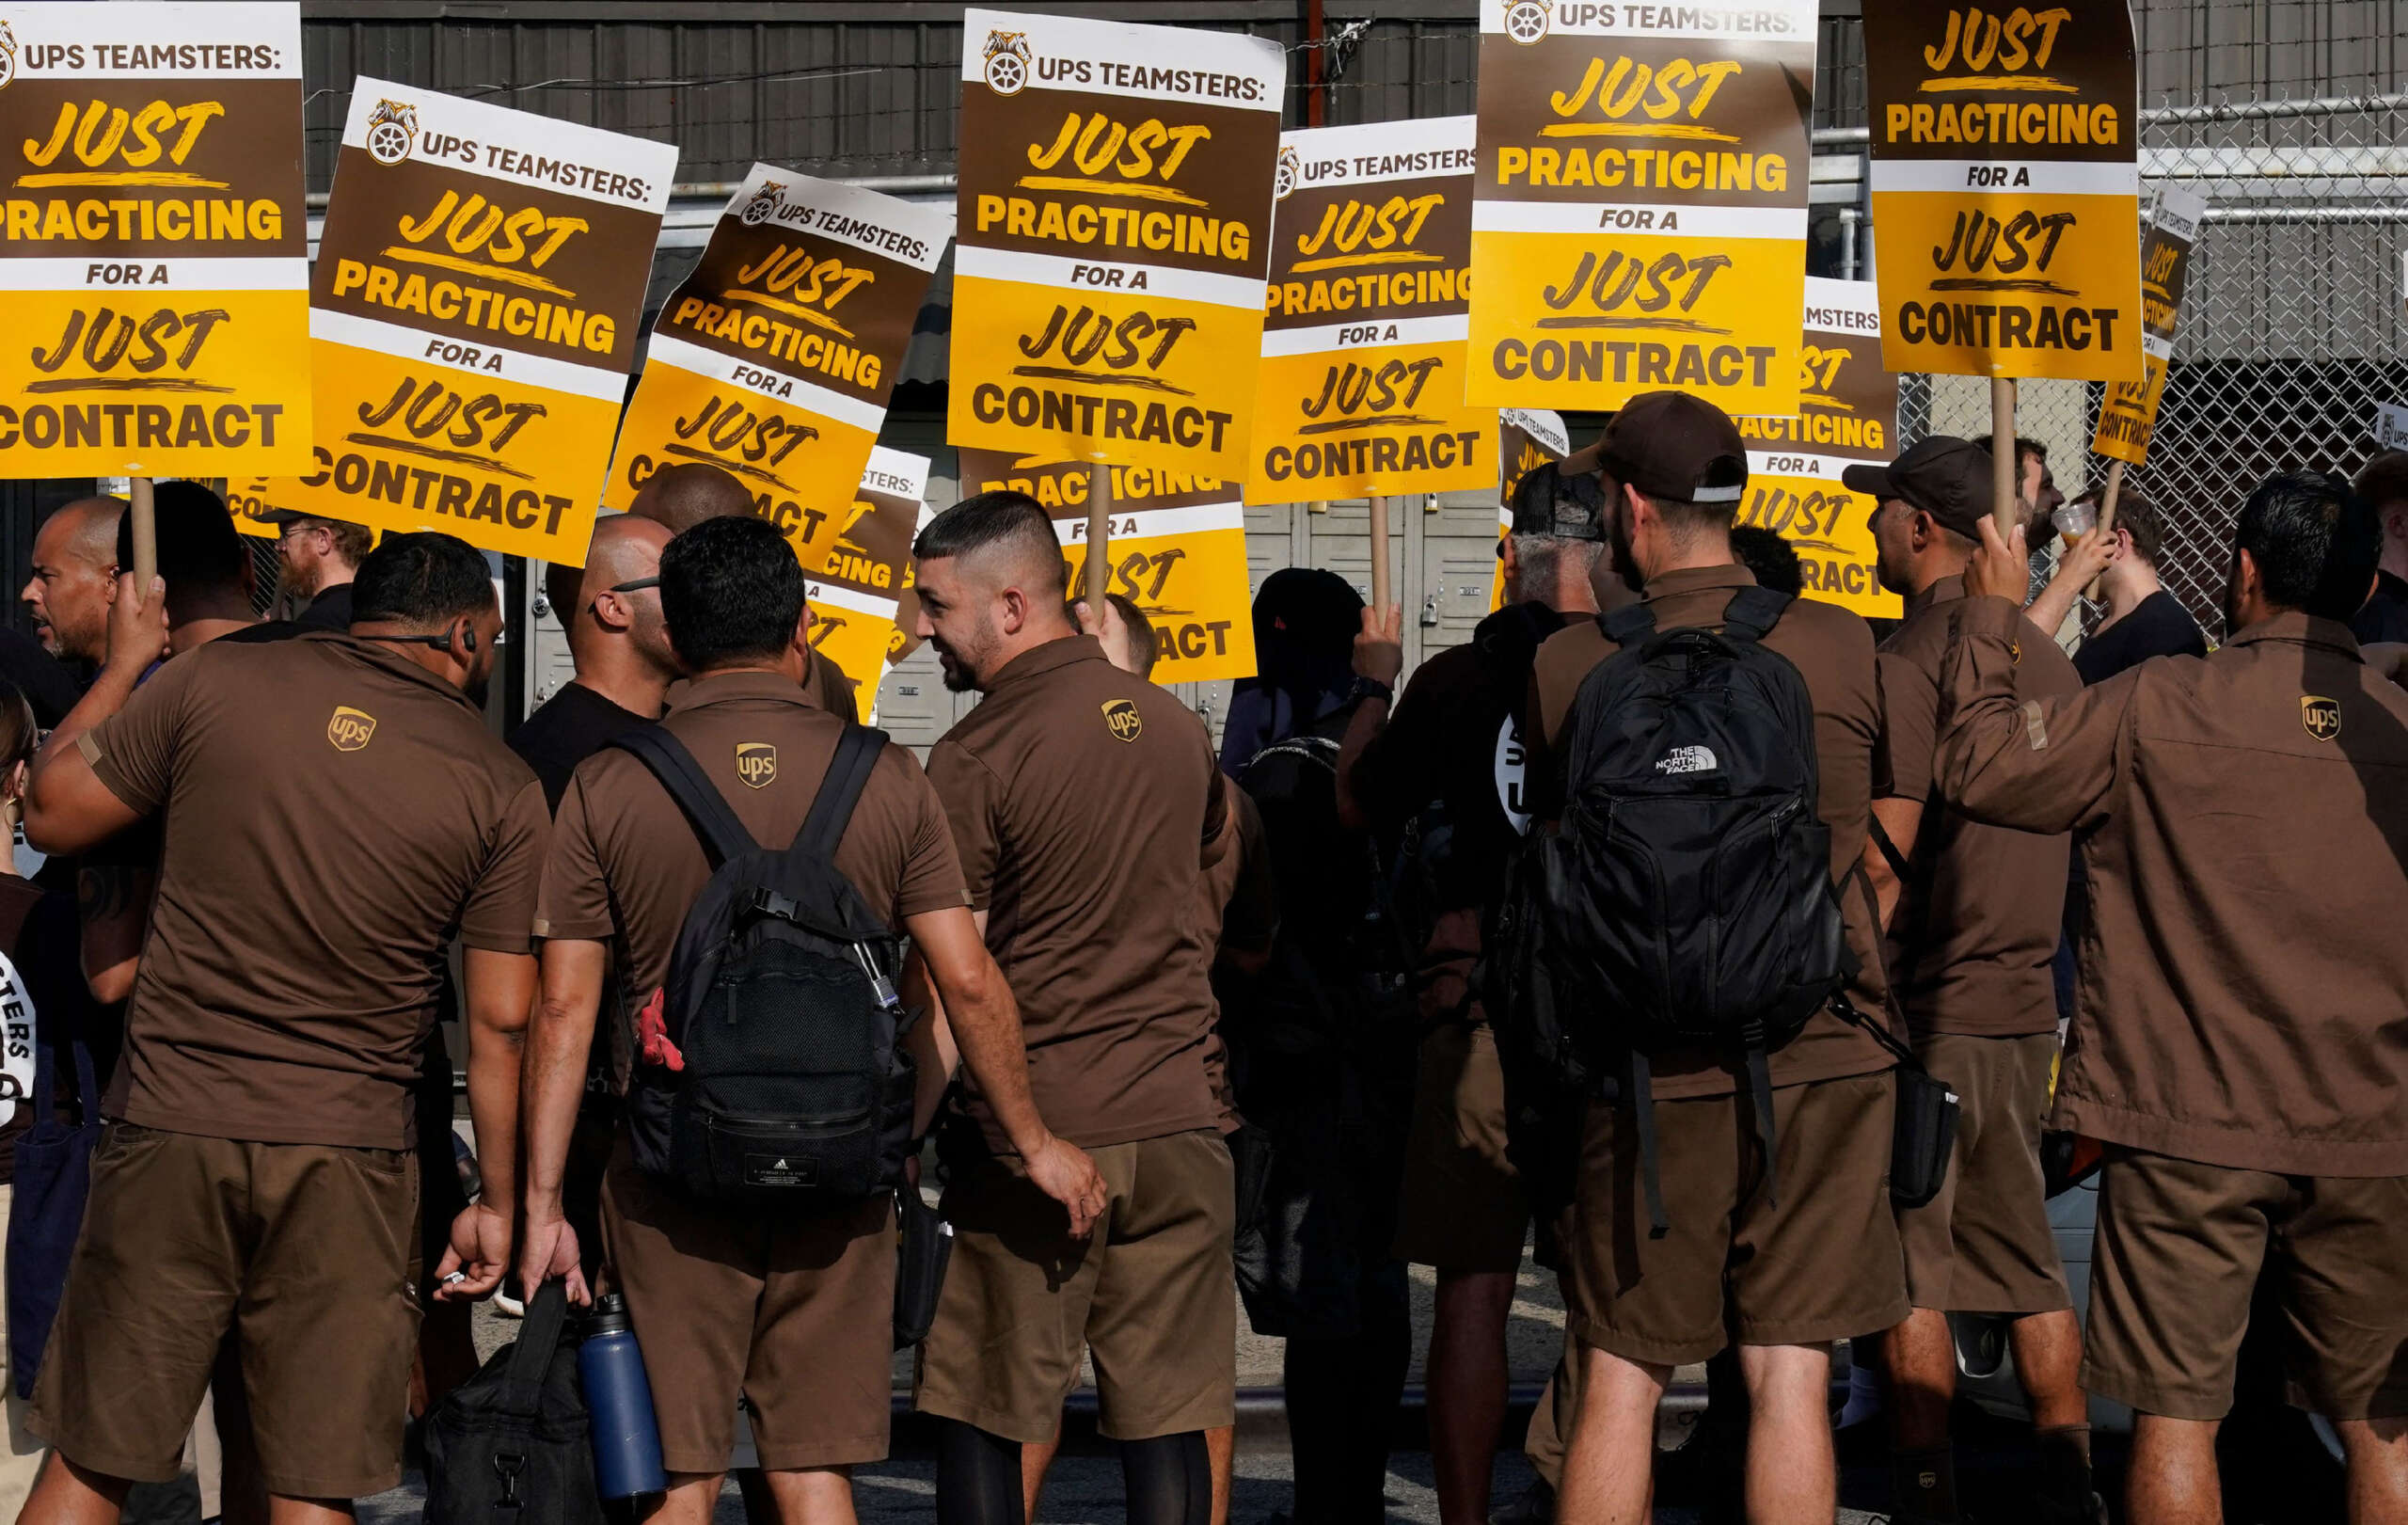 Les travailleurs d'UPS se préparent à faire grève pour des revendications qui amélioreraient la vie de plus de 340 000 personnes